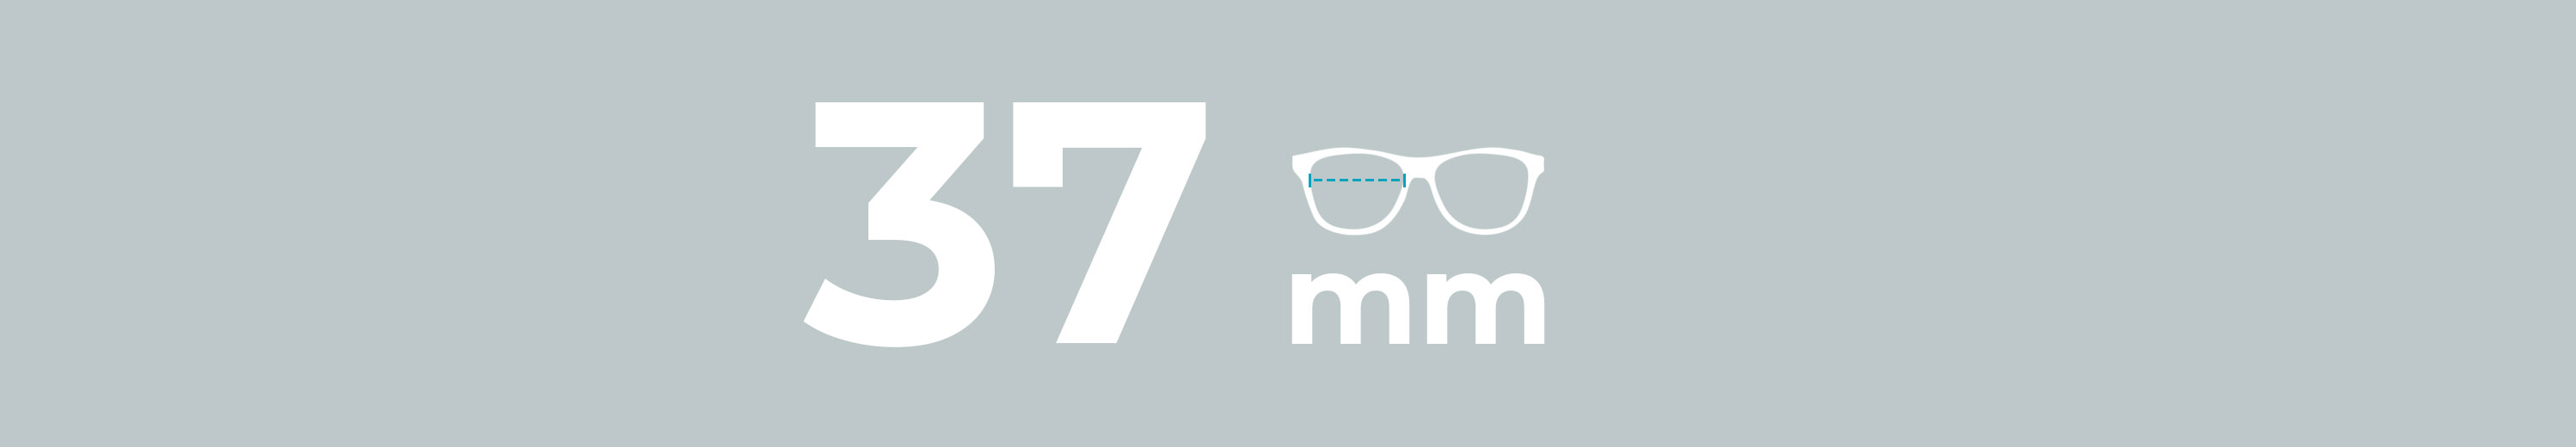 Eyeglasses 37mm Lens